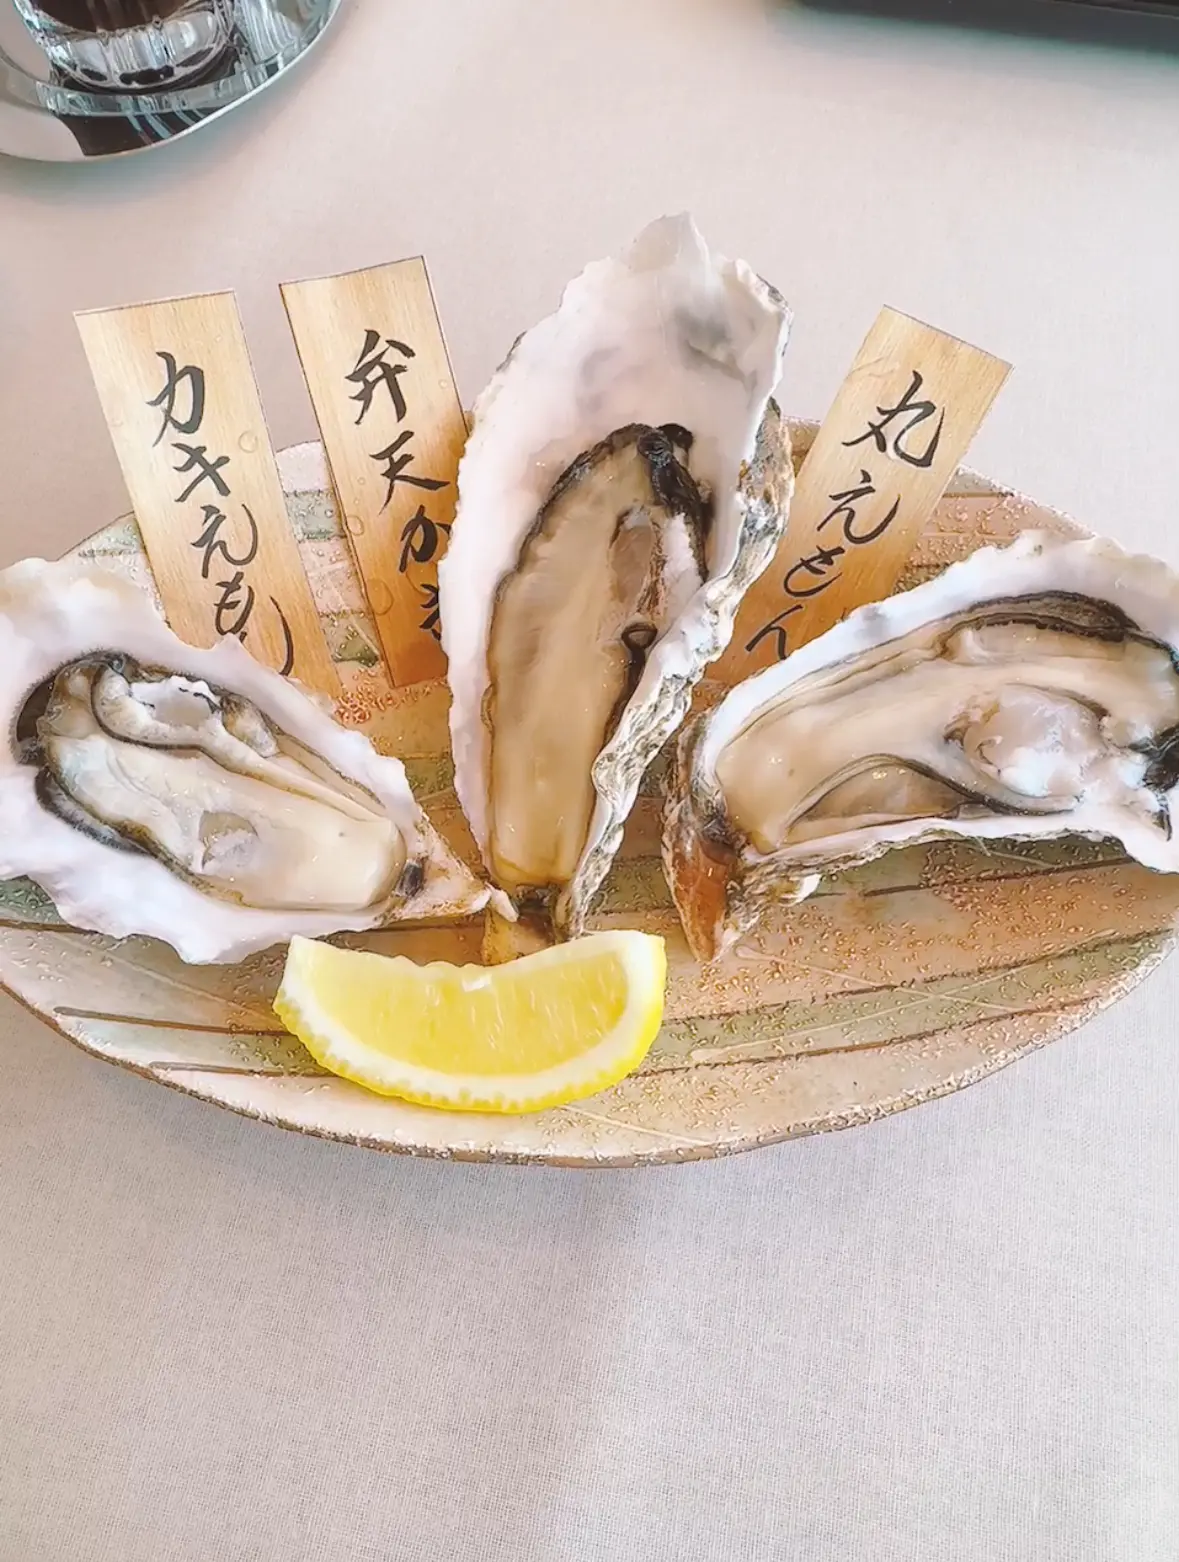 厚岸グルメパーク（厚岸味覚ターミナル・コンキリエ）の牡蠣3種食べ比べ